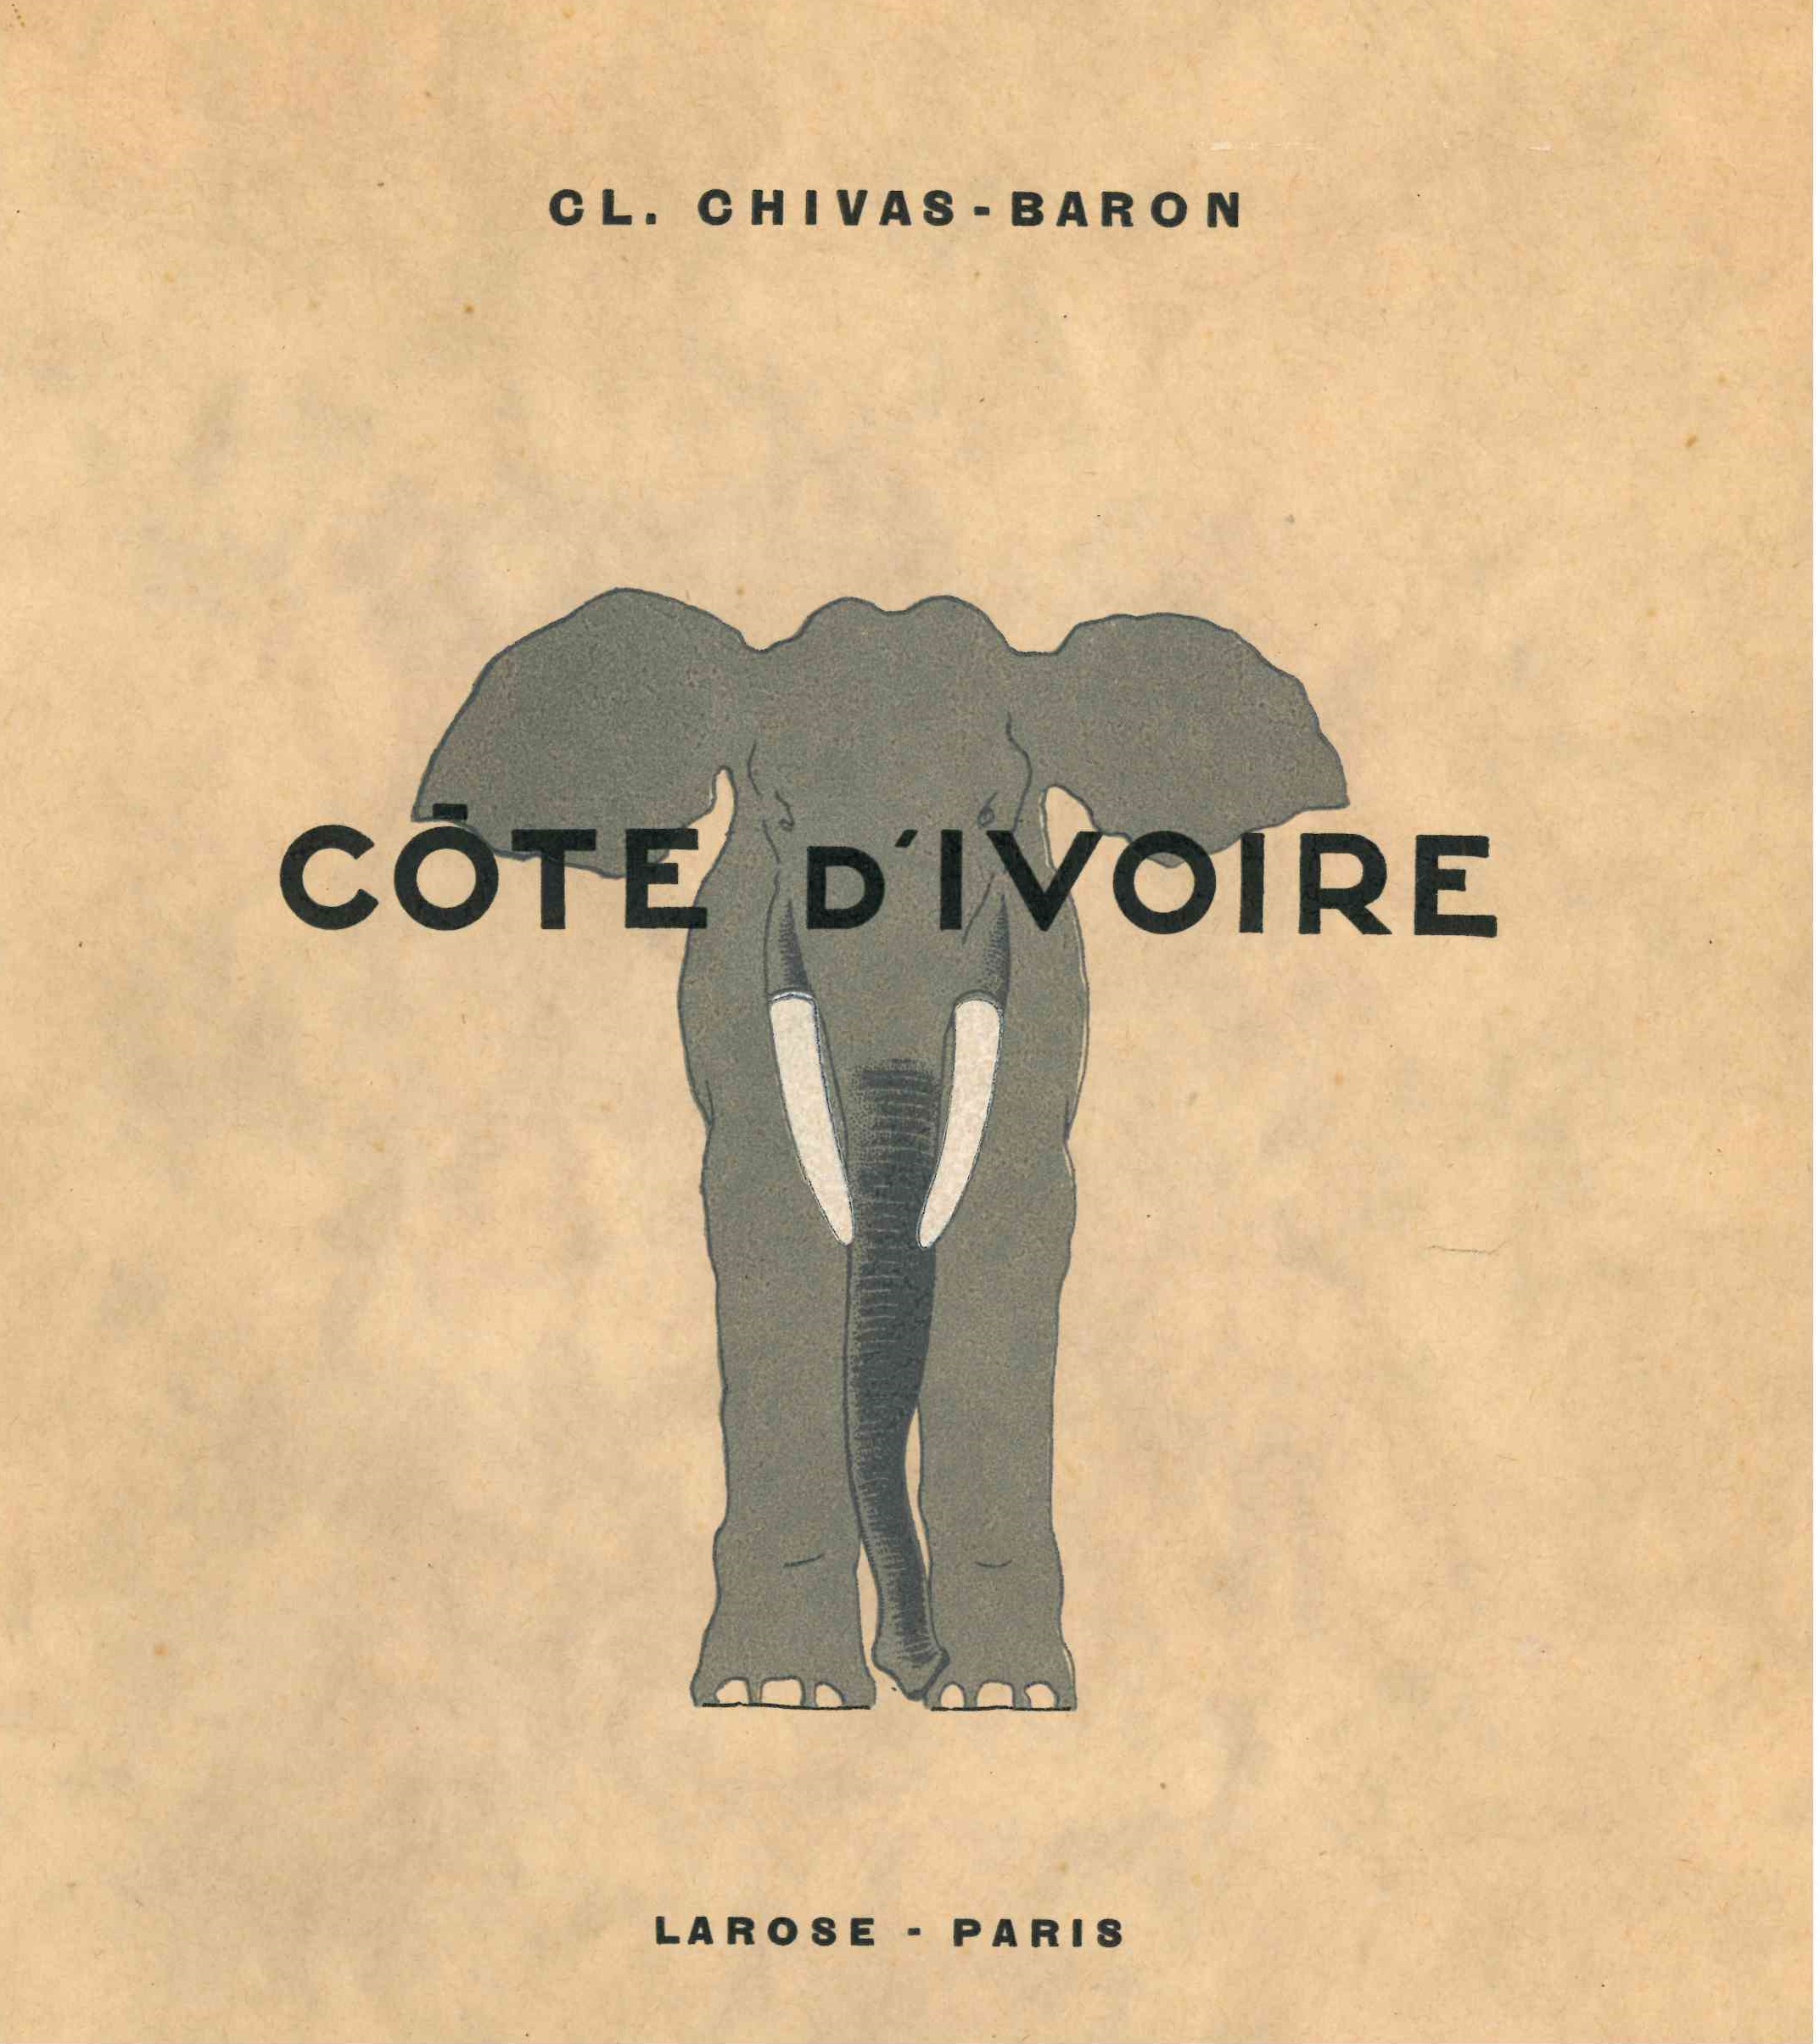 Chivas-Baron (Clotilde), Côte d’Ivoire, Paris, Larose, 1939